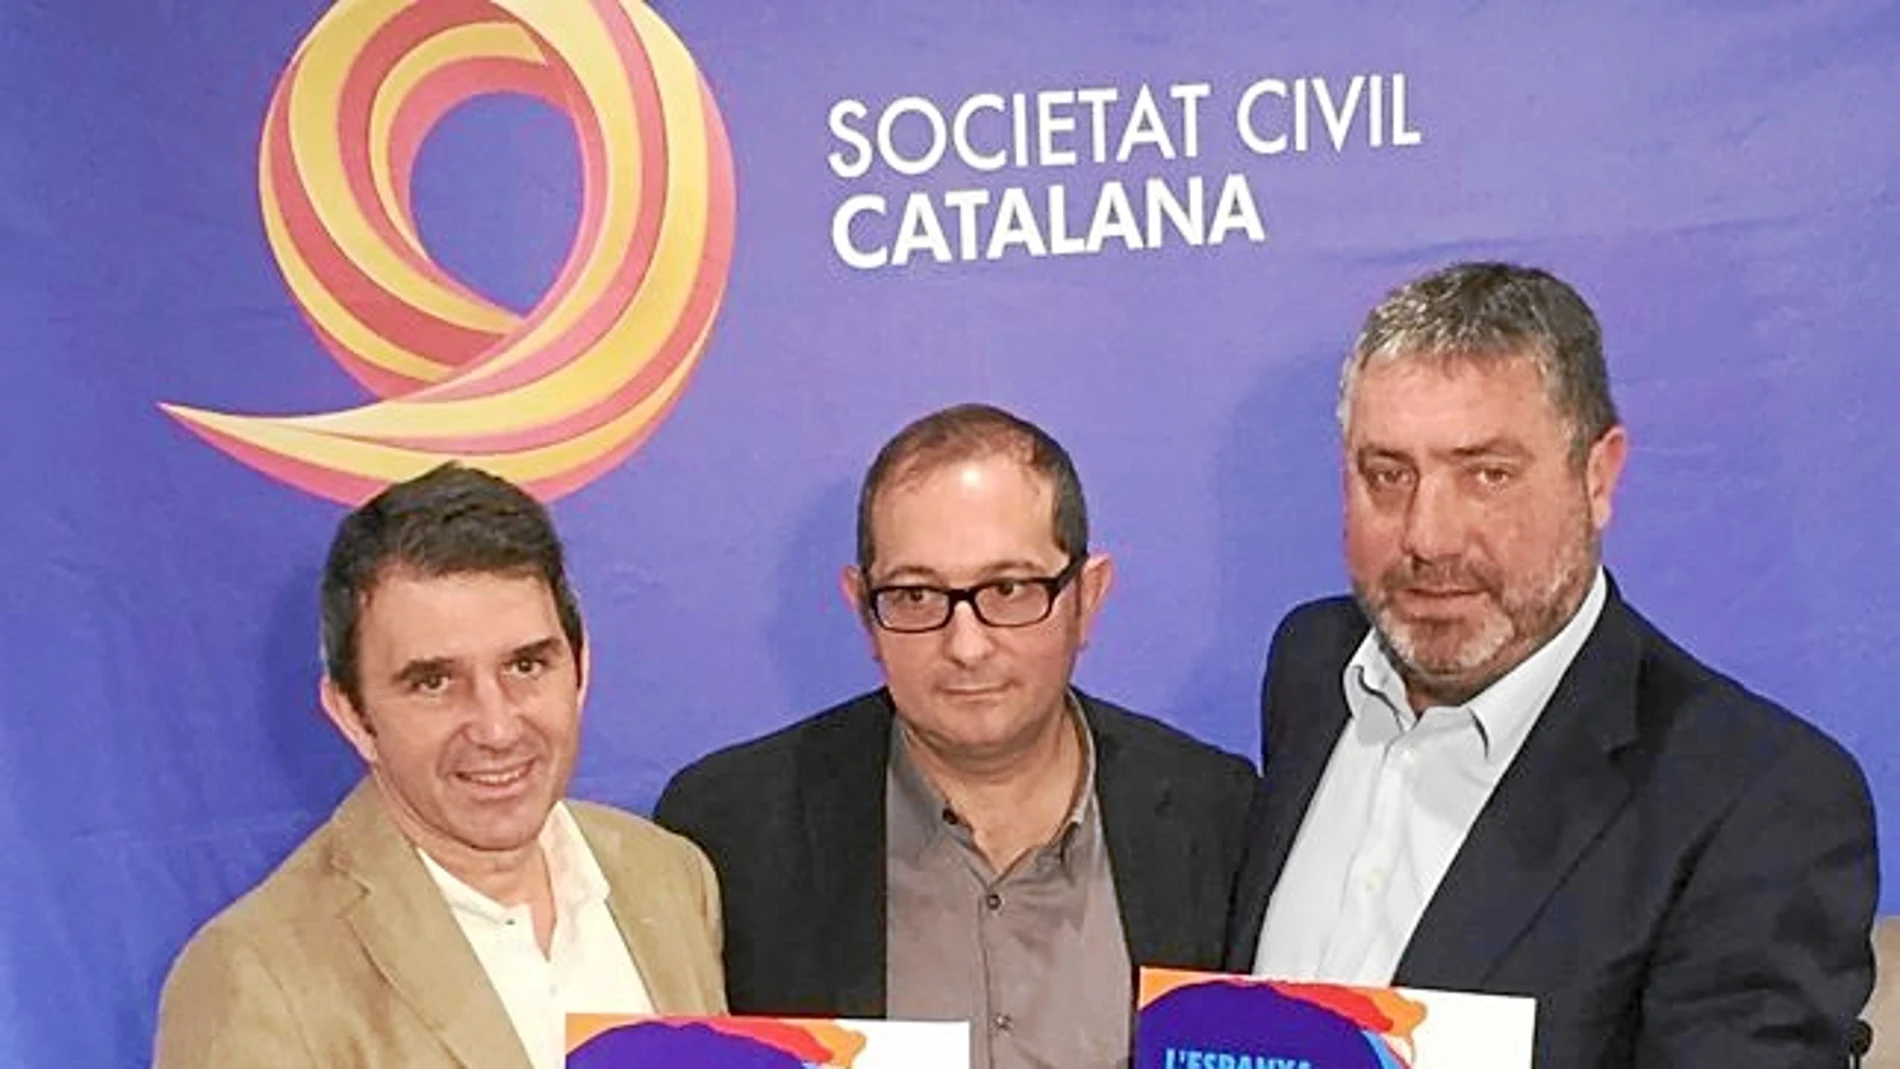 Los dirigentes de Societat Civil Catalana quieren cambiar el discurso existente en Cataluña, por lo que organizan un acto para el domingo